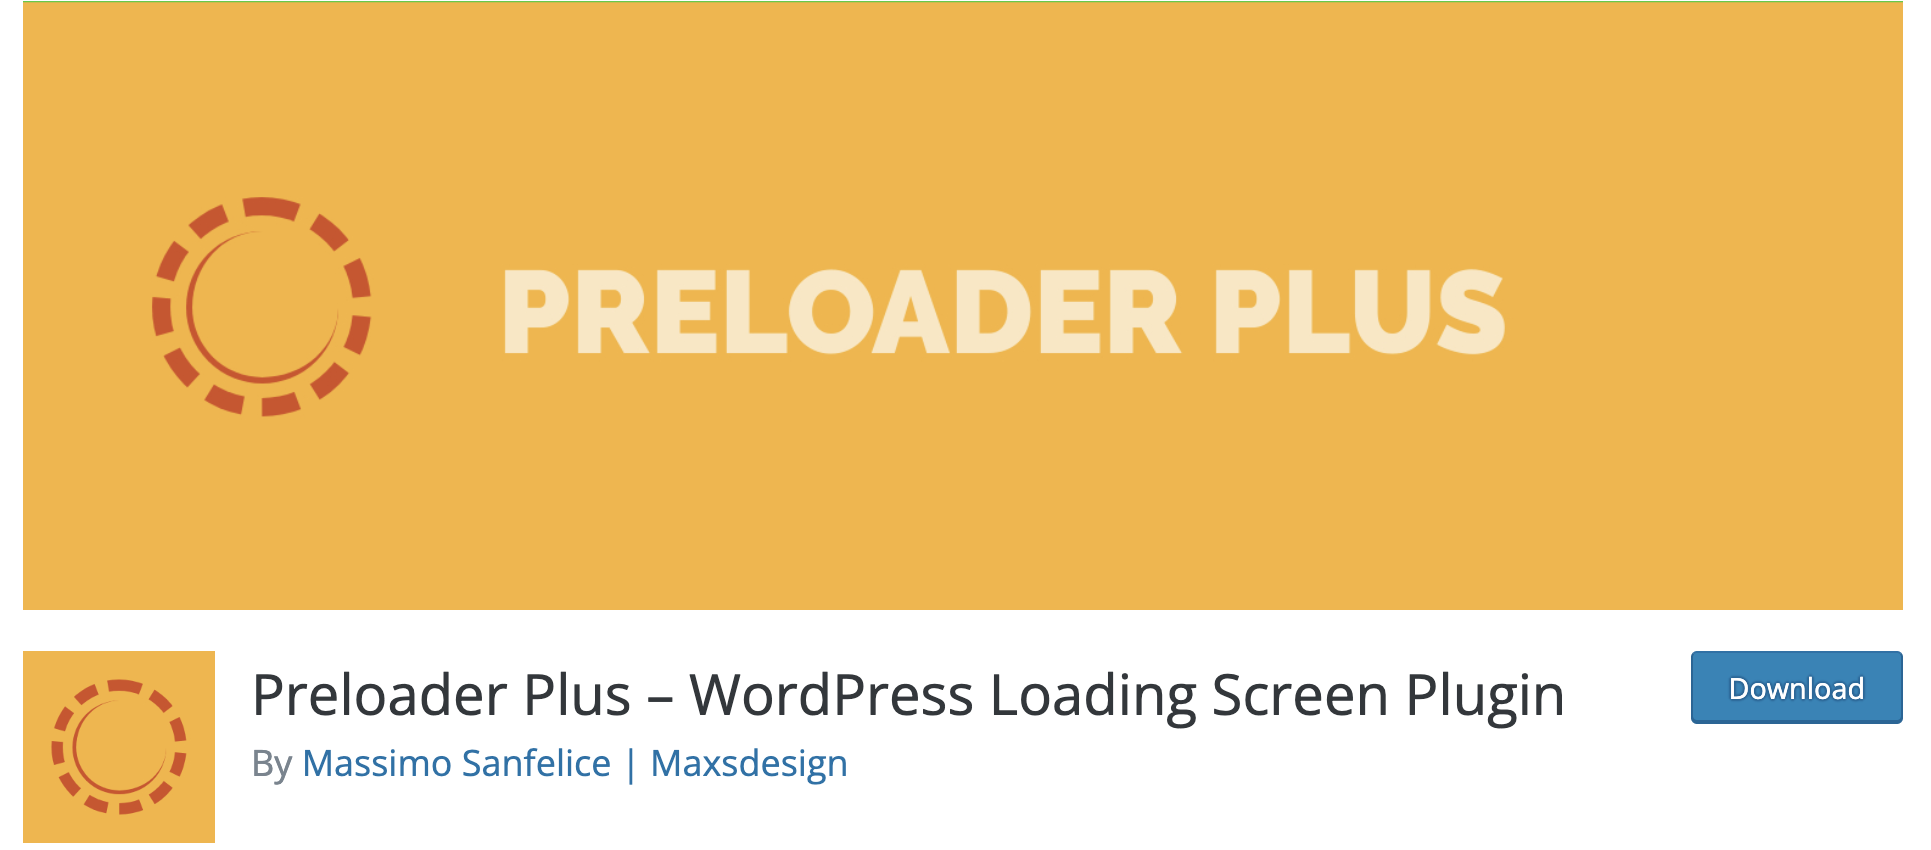 notix-wp-plugins-preloader